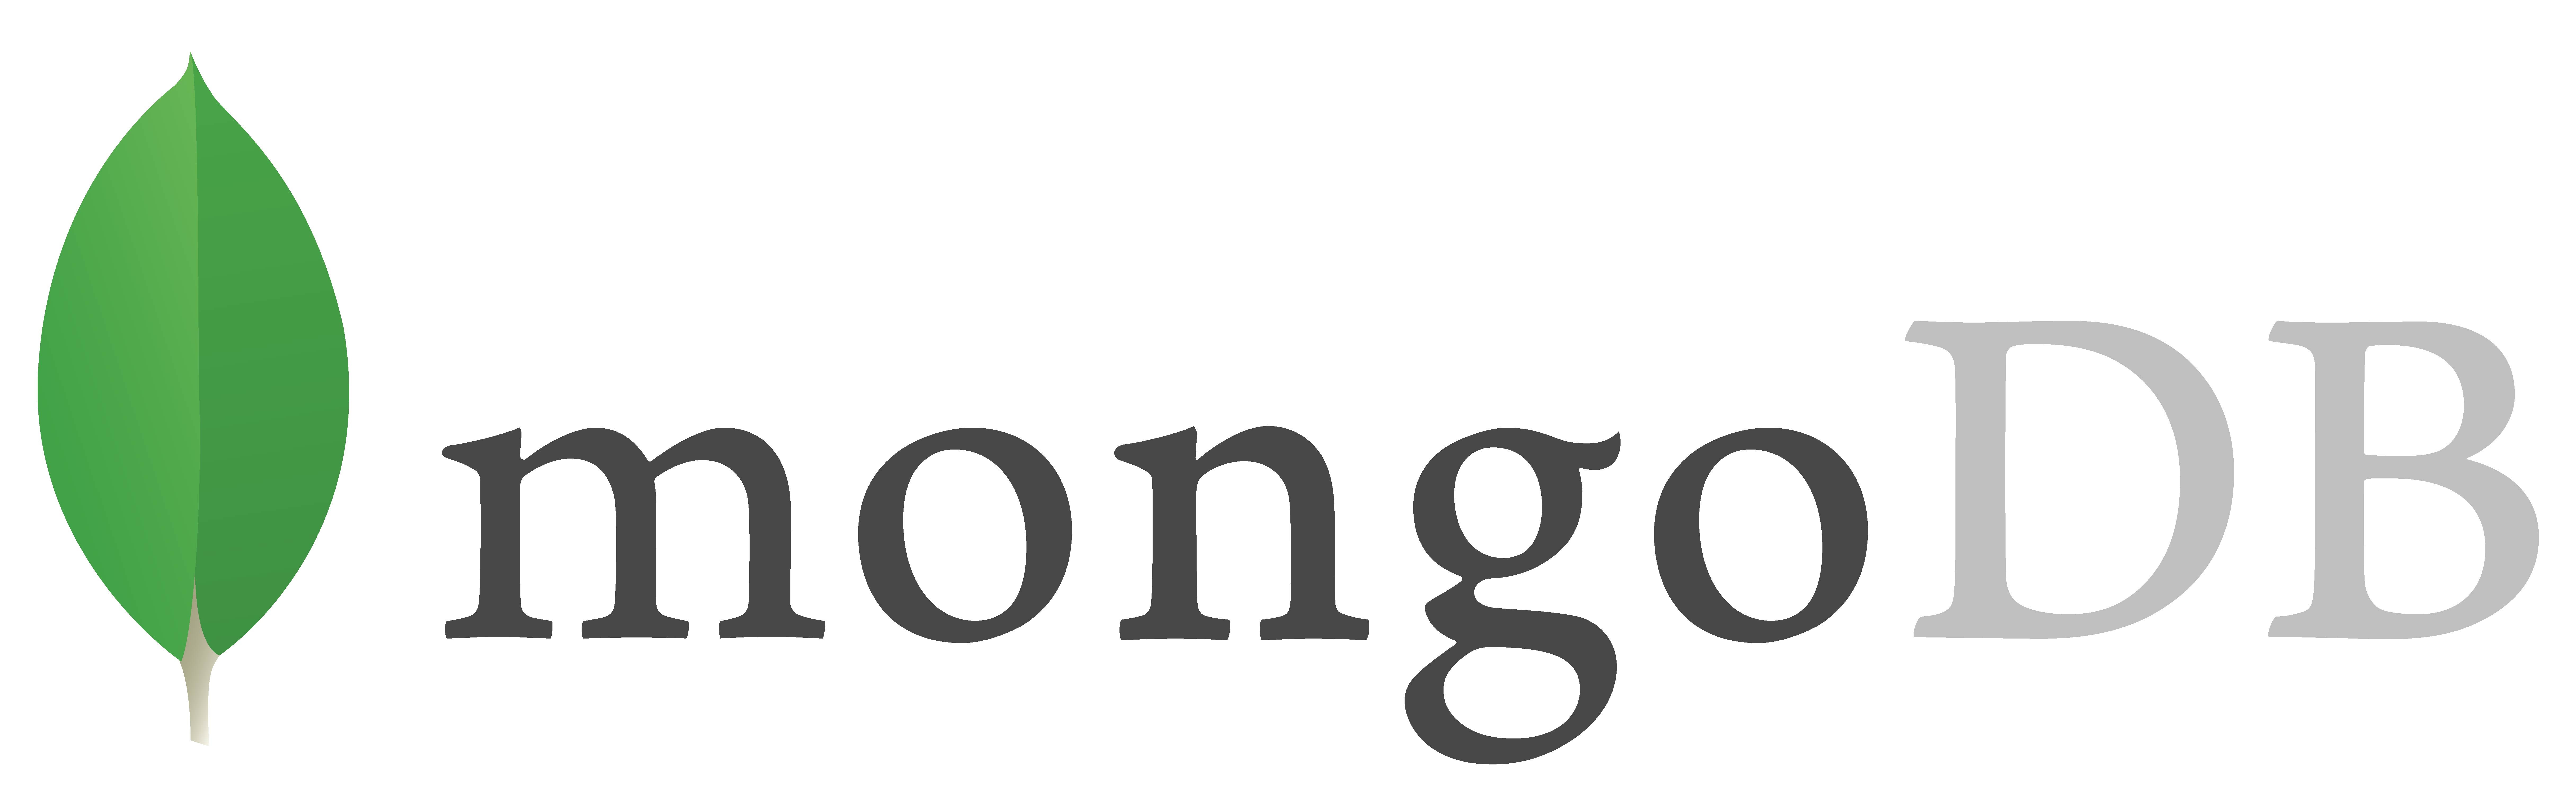 Mongodb gray logo fullcolor rgb 01